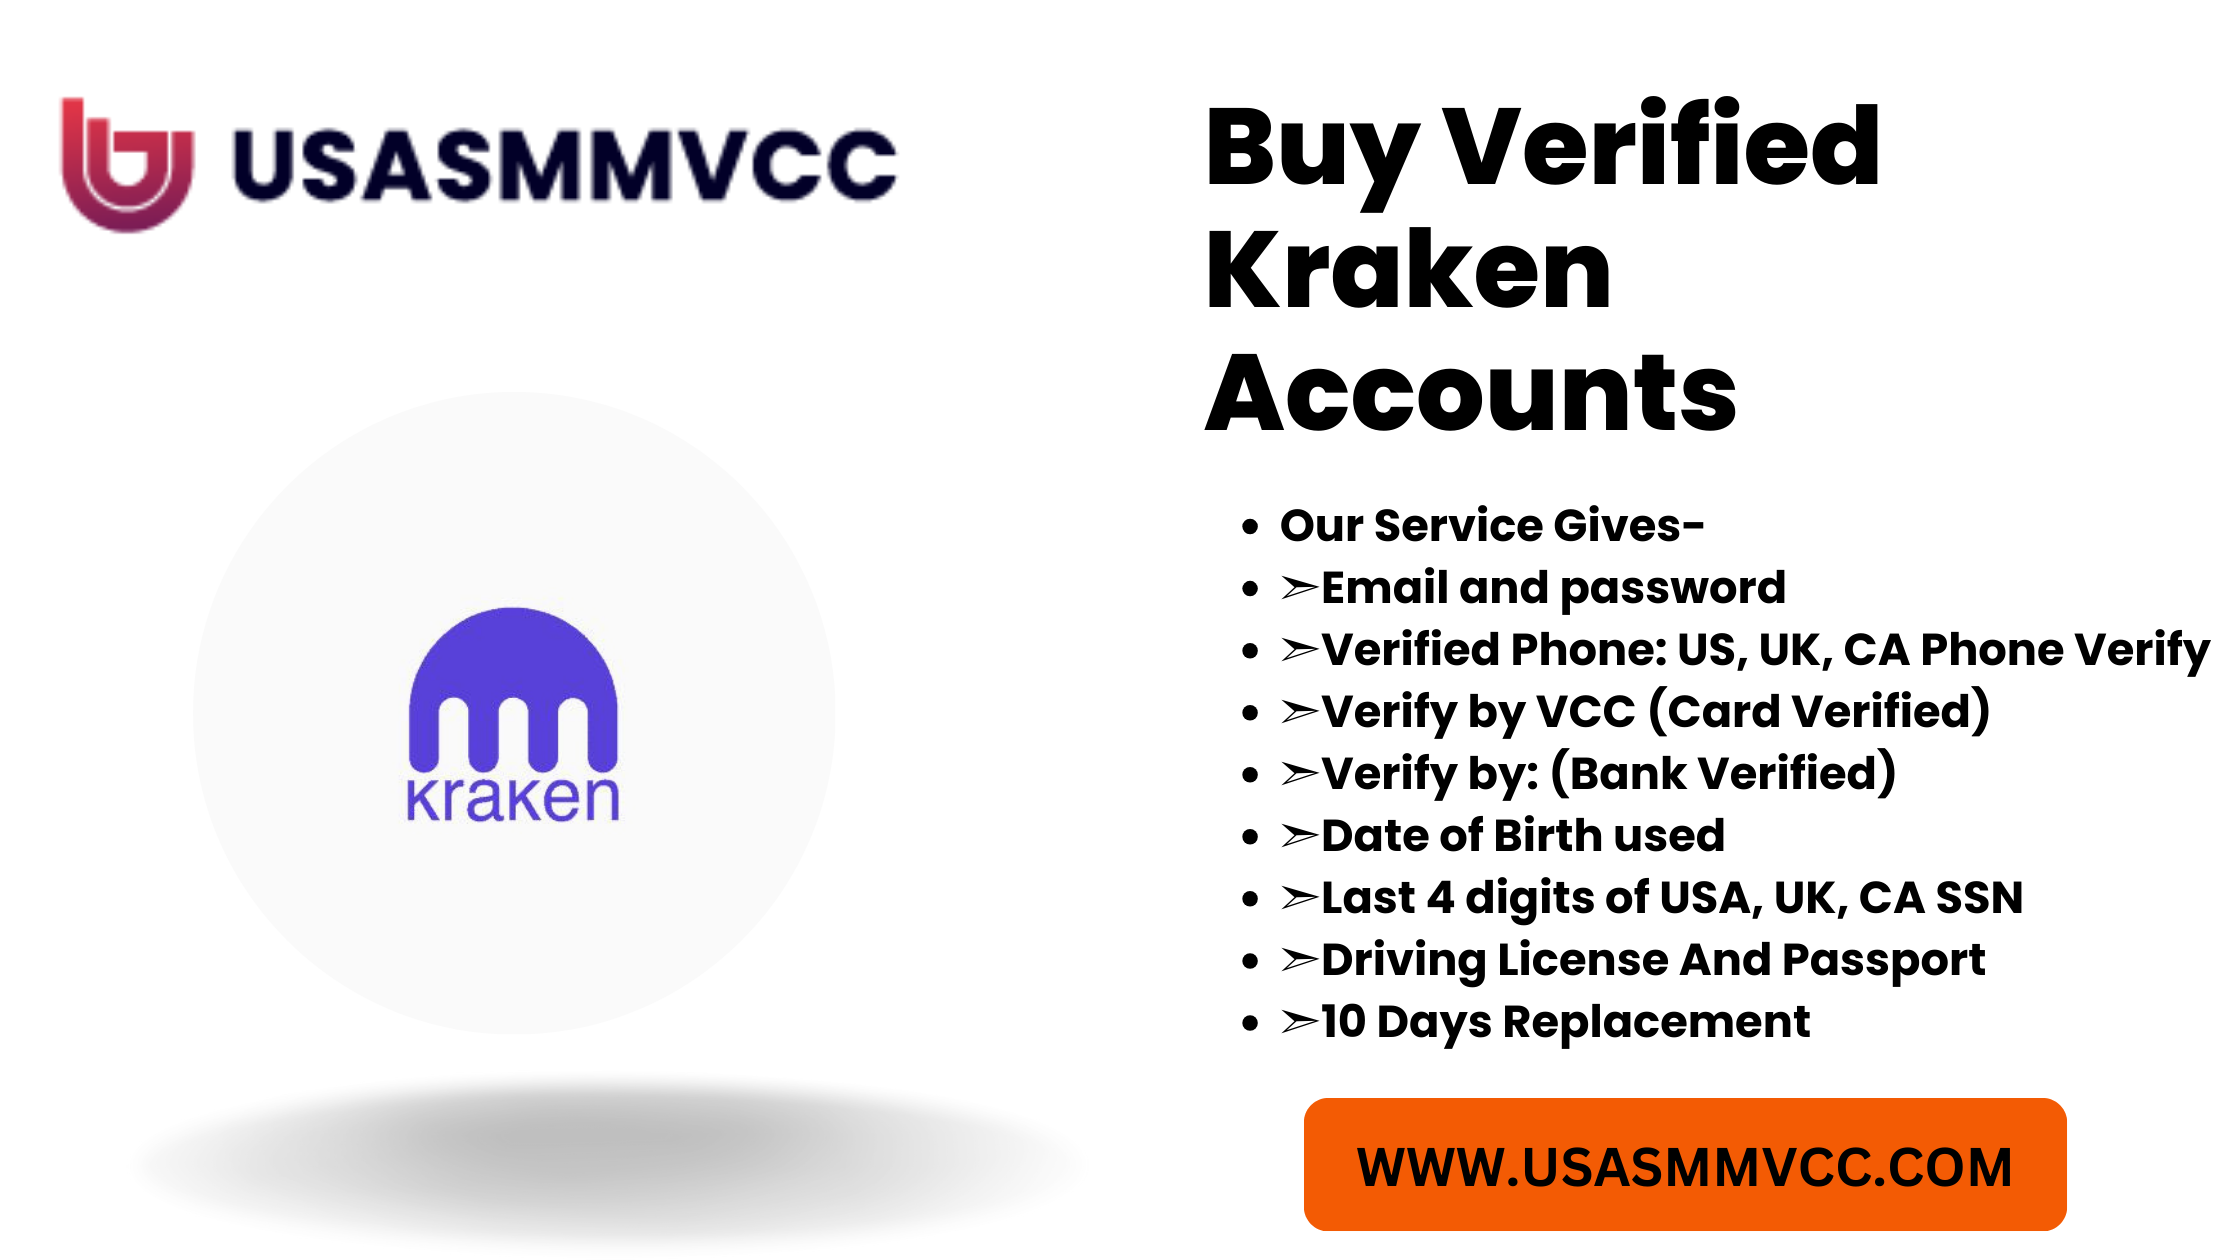 Buy Verified Kraken Accounts